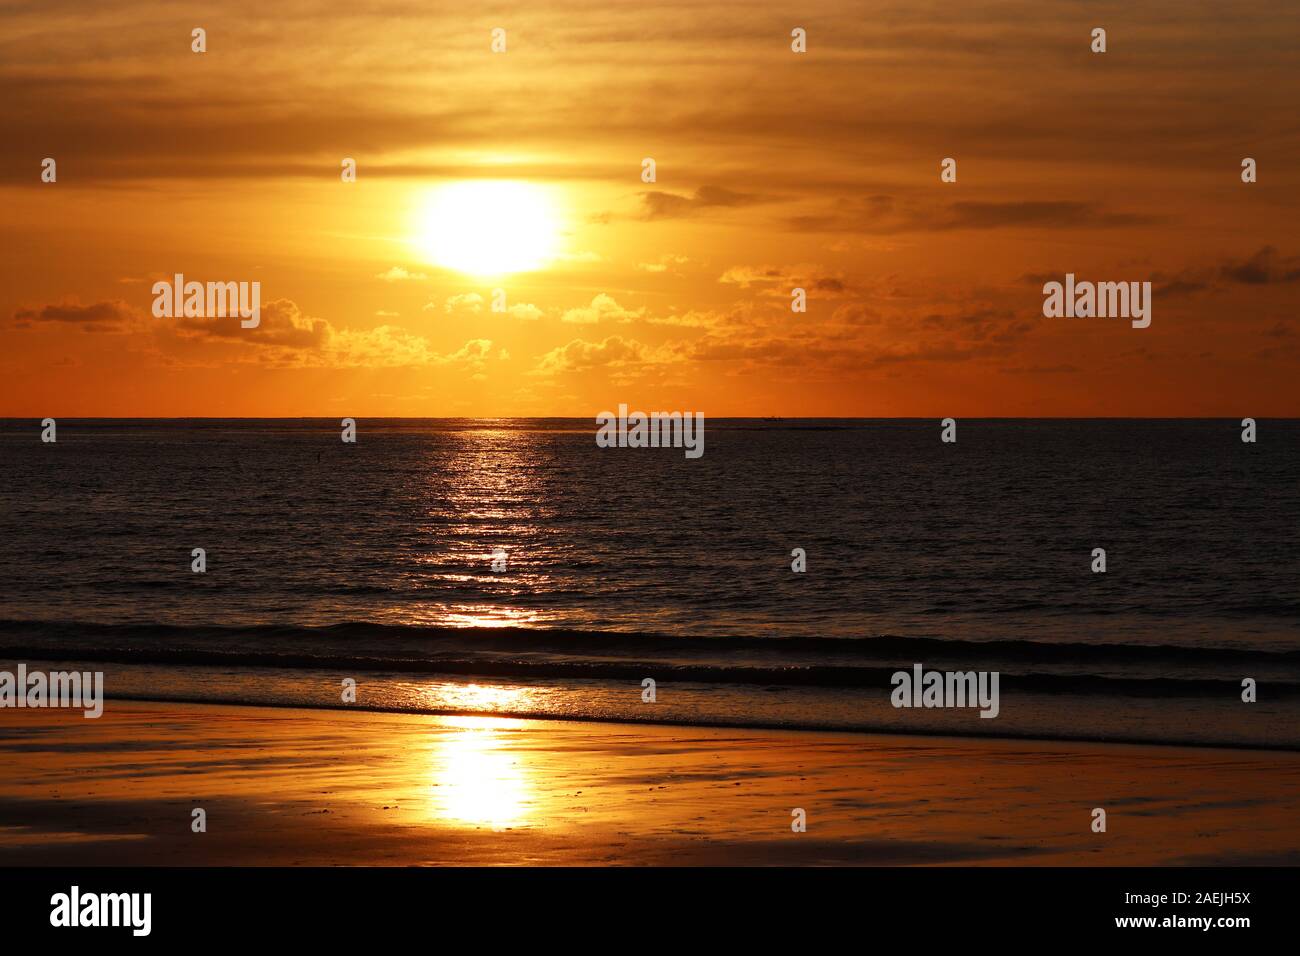 Sonnenuntergang an einem Sandstrand, abends Meer Hintergrund, orange Sun ist in dramatischen Meer Wellen reflektiert. Dunkle Wasser und Wolken am Horizont Stockfoto